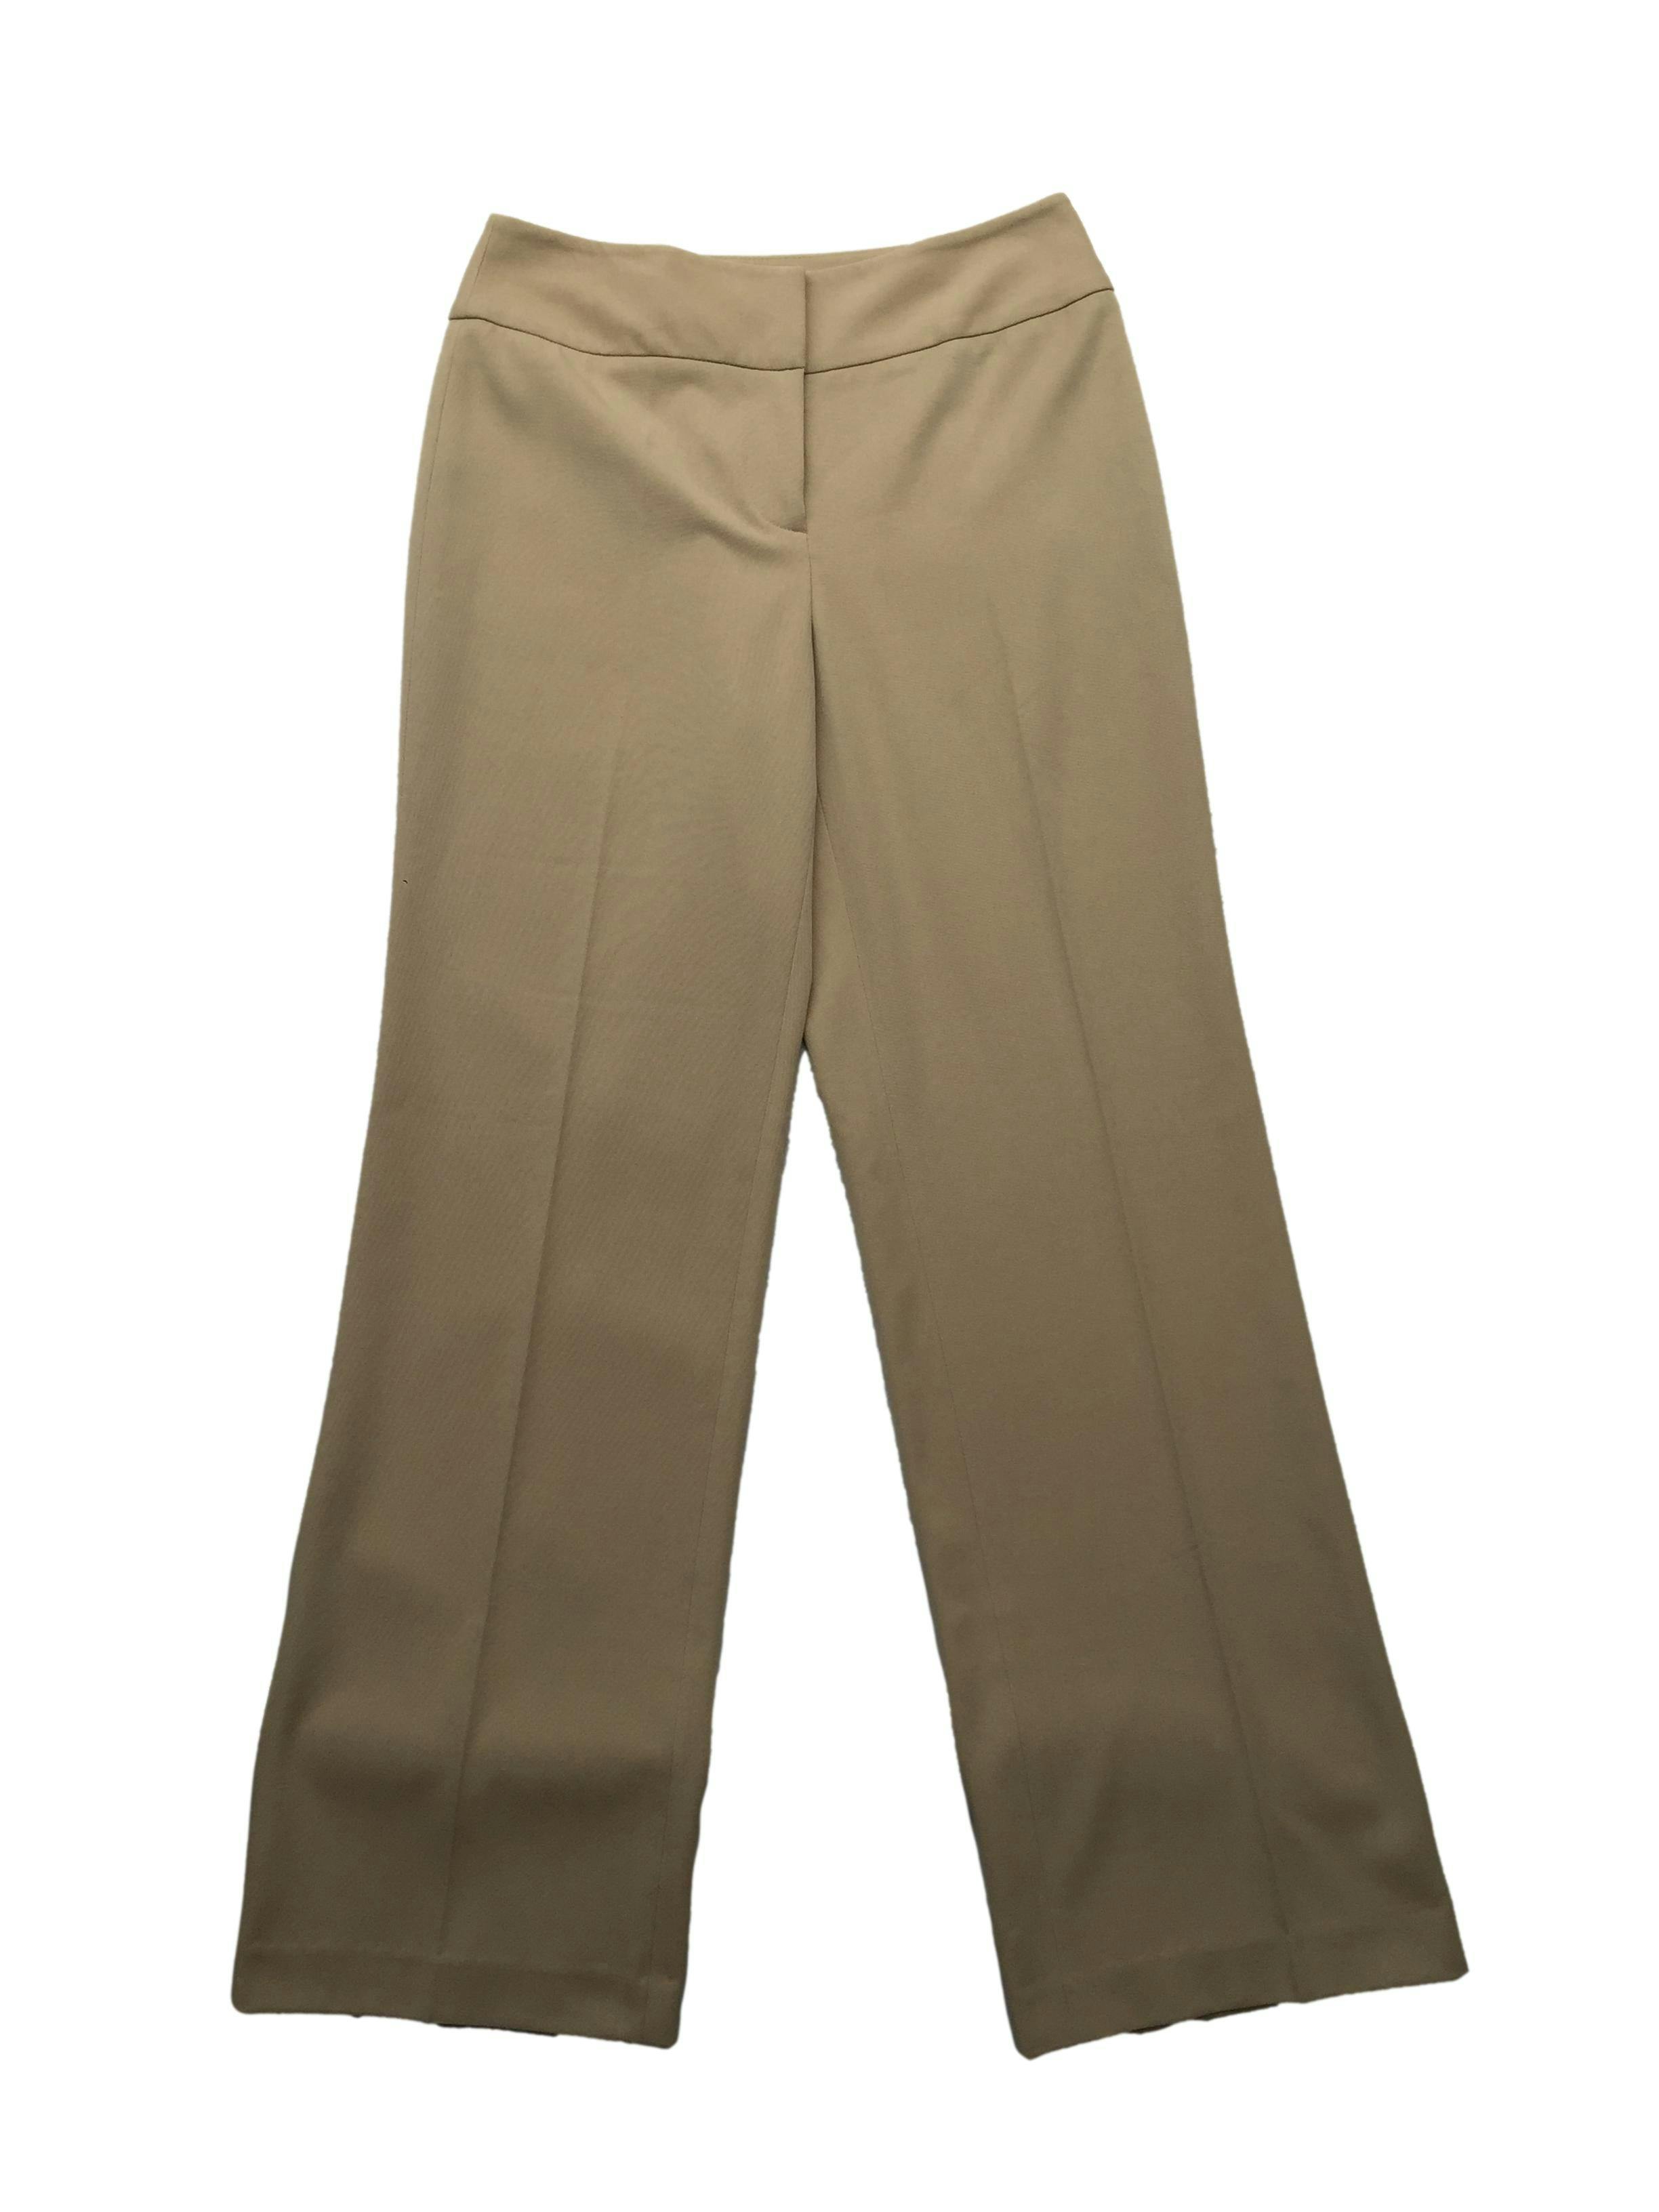 Pantalón Loft beige pierna recta con pinzas y botones posteriores. Cintura 66cm Tiro 24cm Largo 95cm